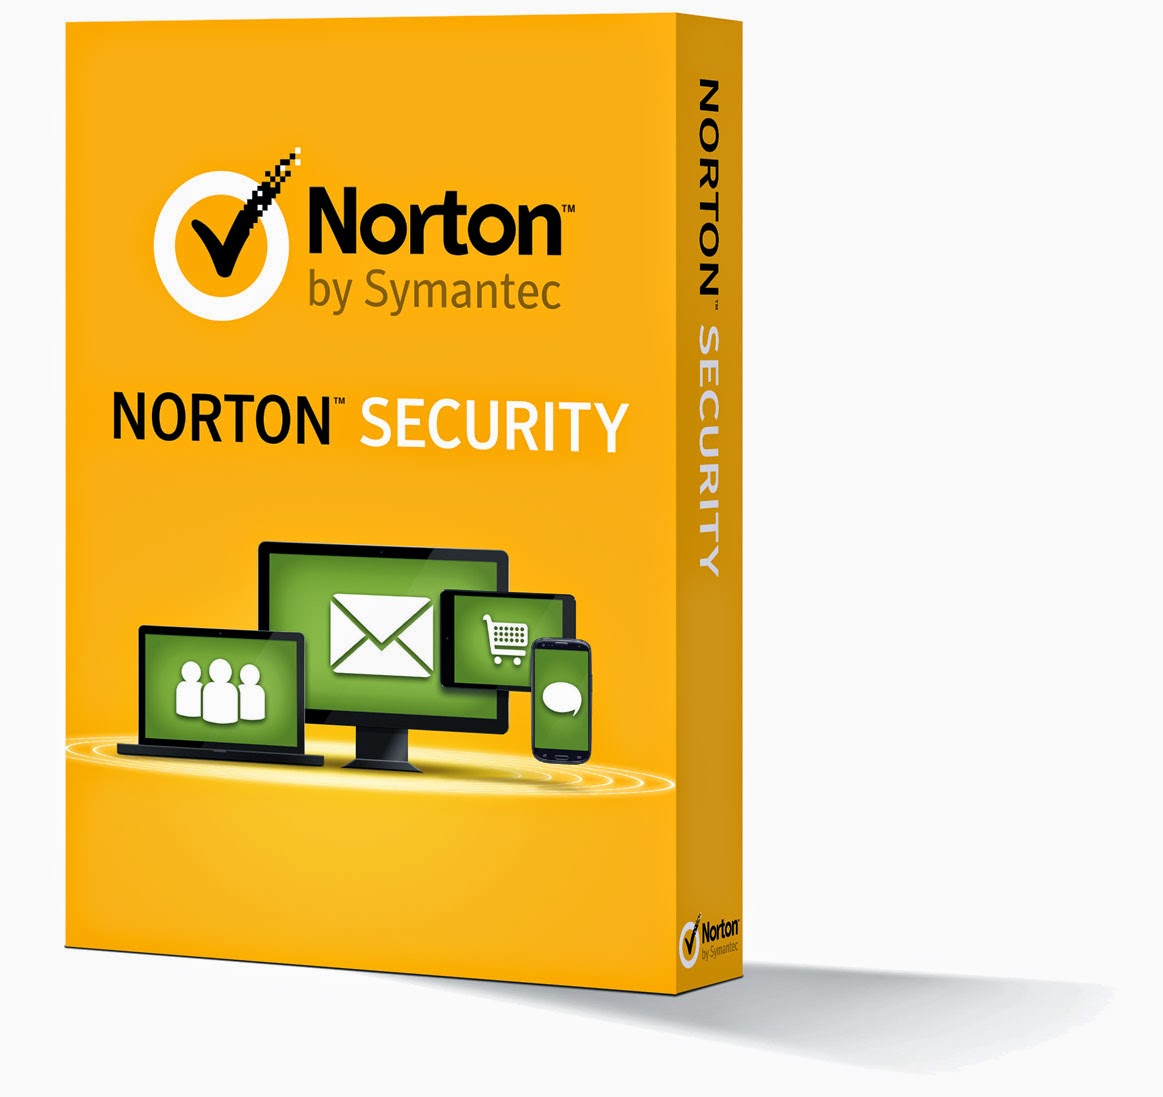 Nuevo Norton Security llega a México